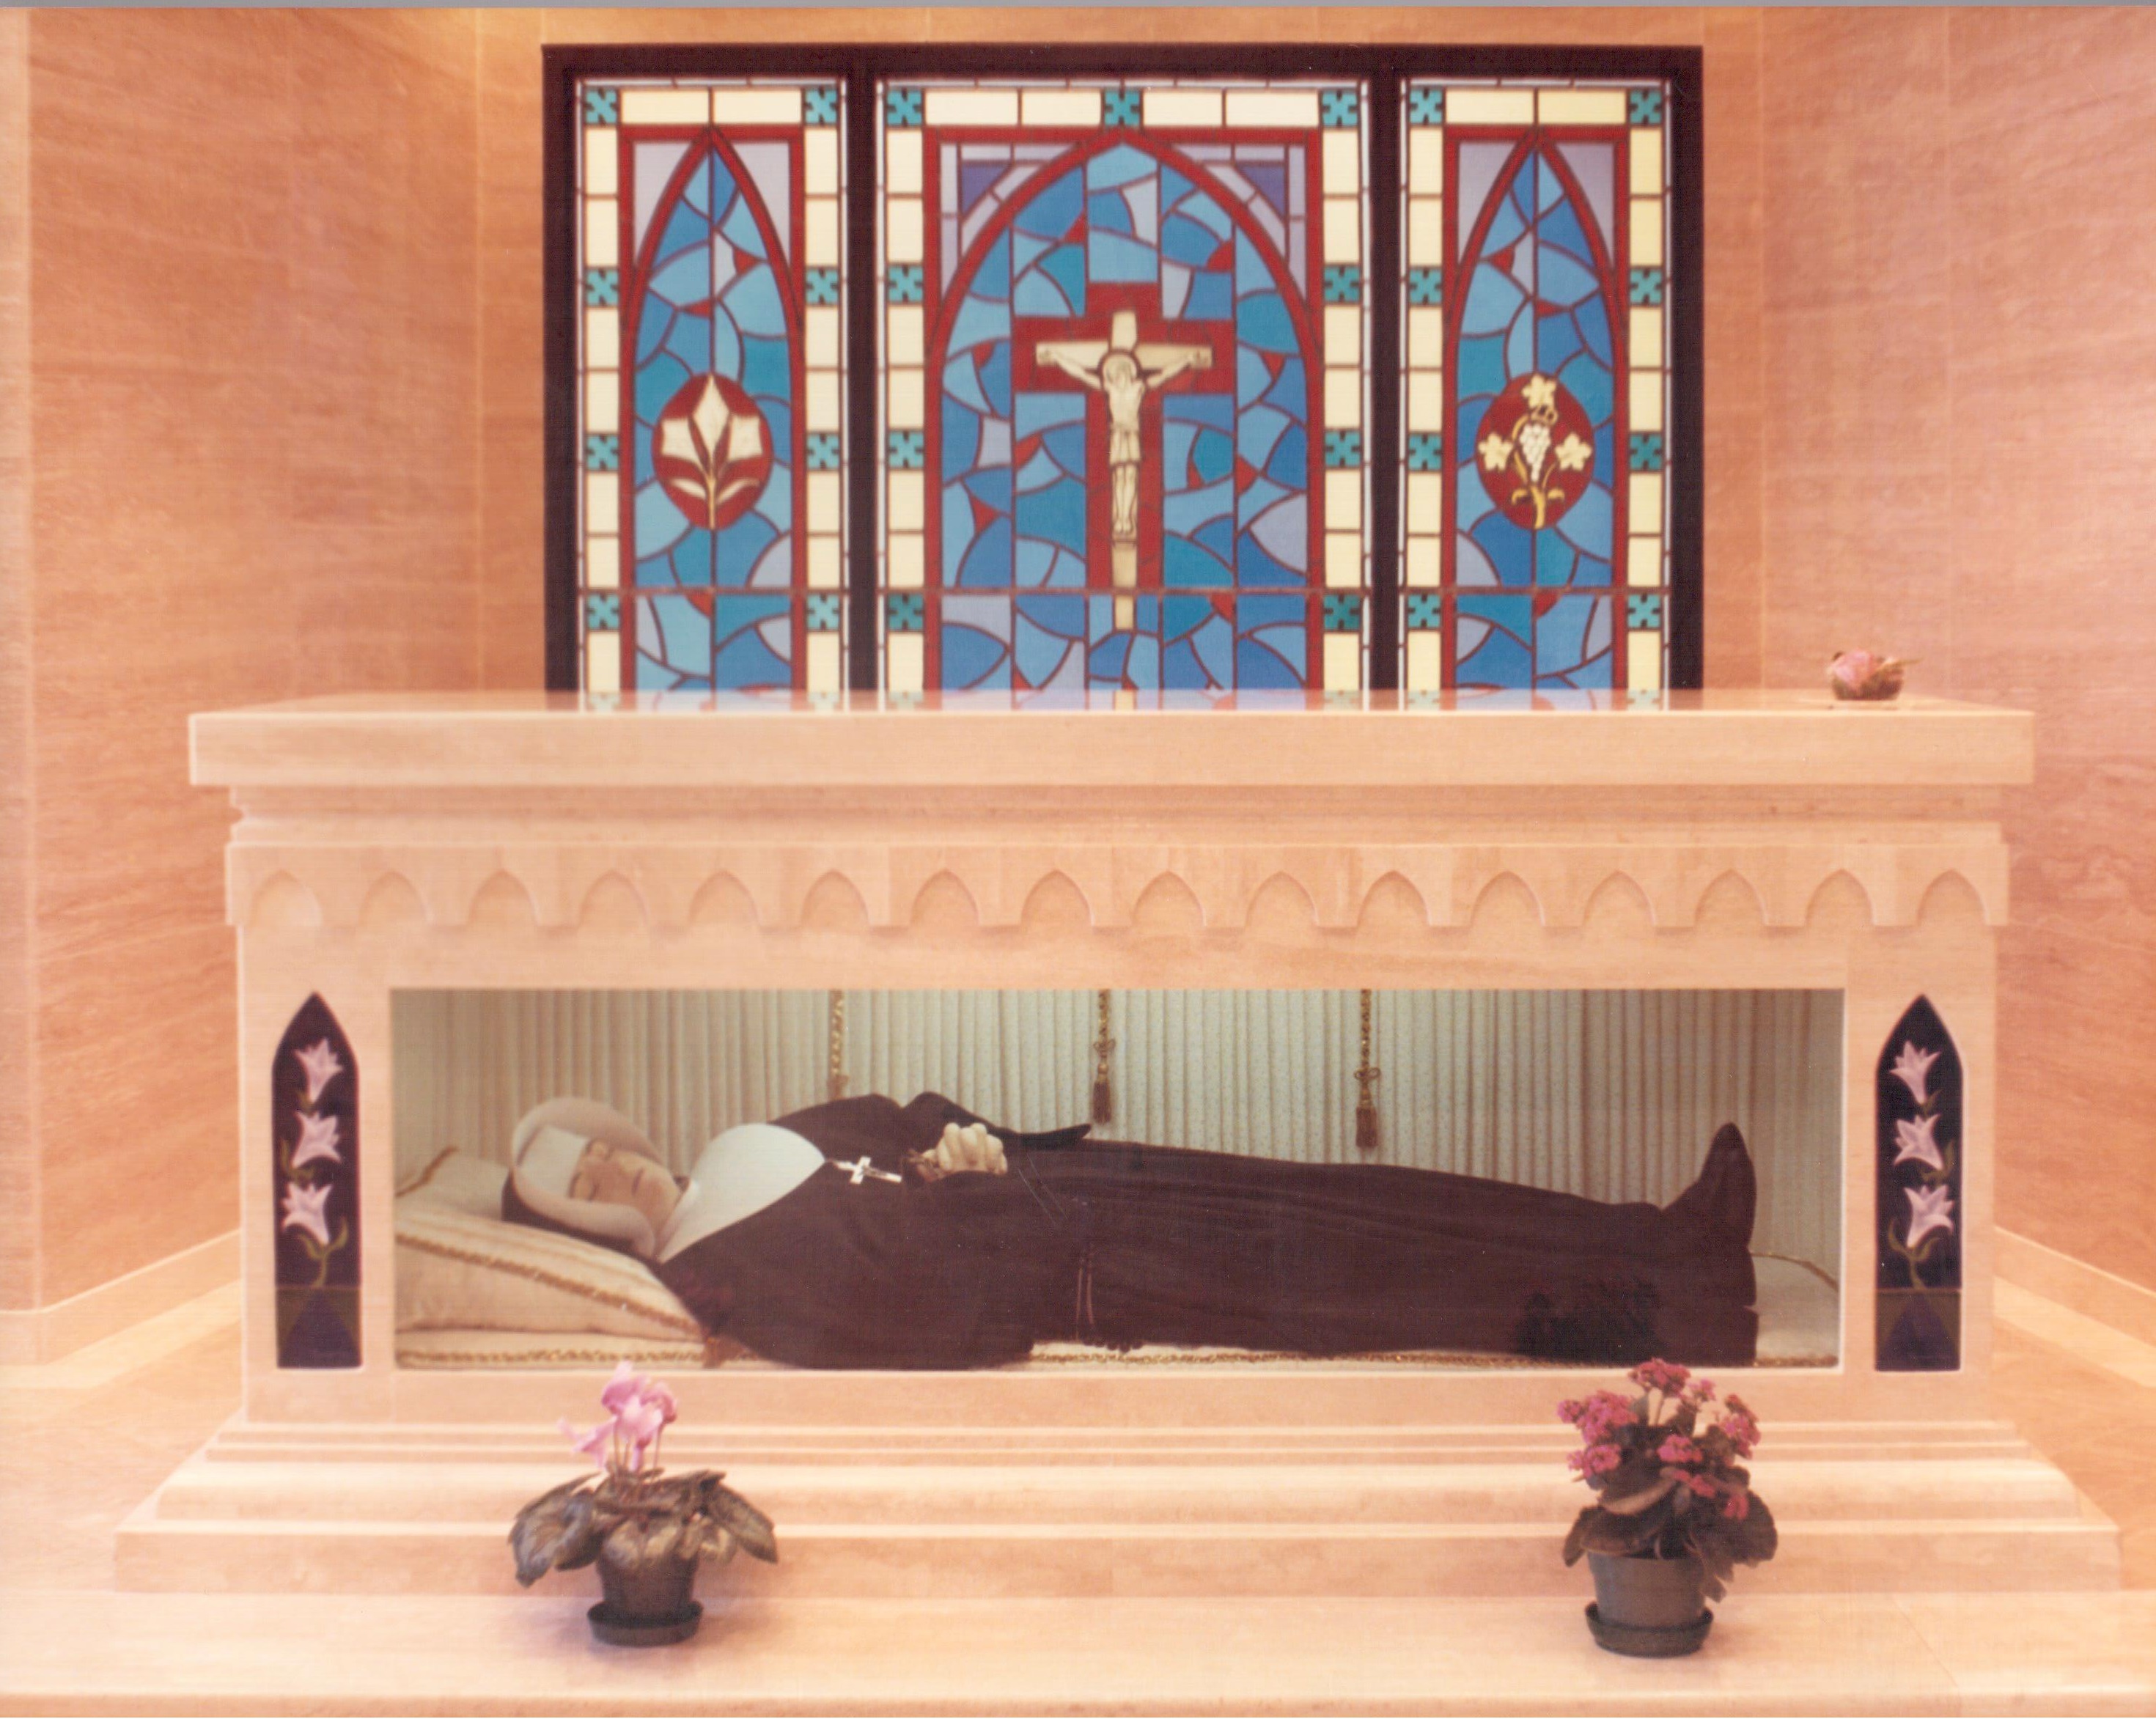 La relique de la bienheureuse Marie-Léonie Paradis  transférée à la Basilique-Cathédrale Saint-Michel de Sherbrooke